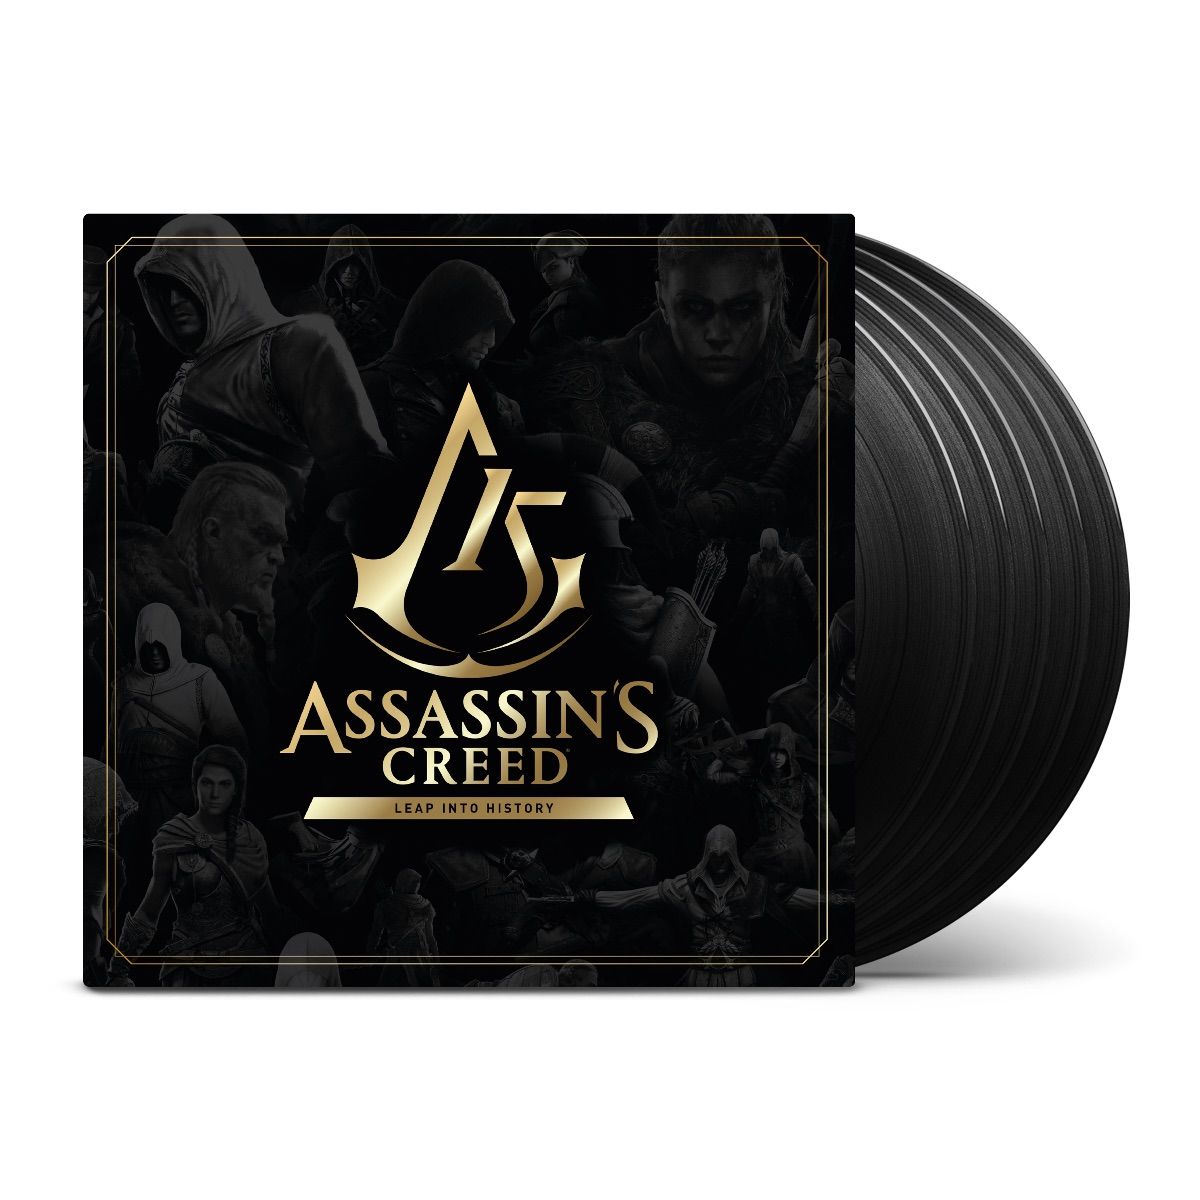 Assassin’s Creed - Leap Into History (Original Soundtrack): 5LP Vinyl Box Set